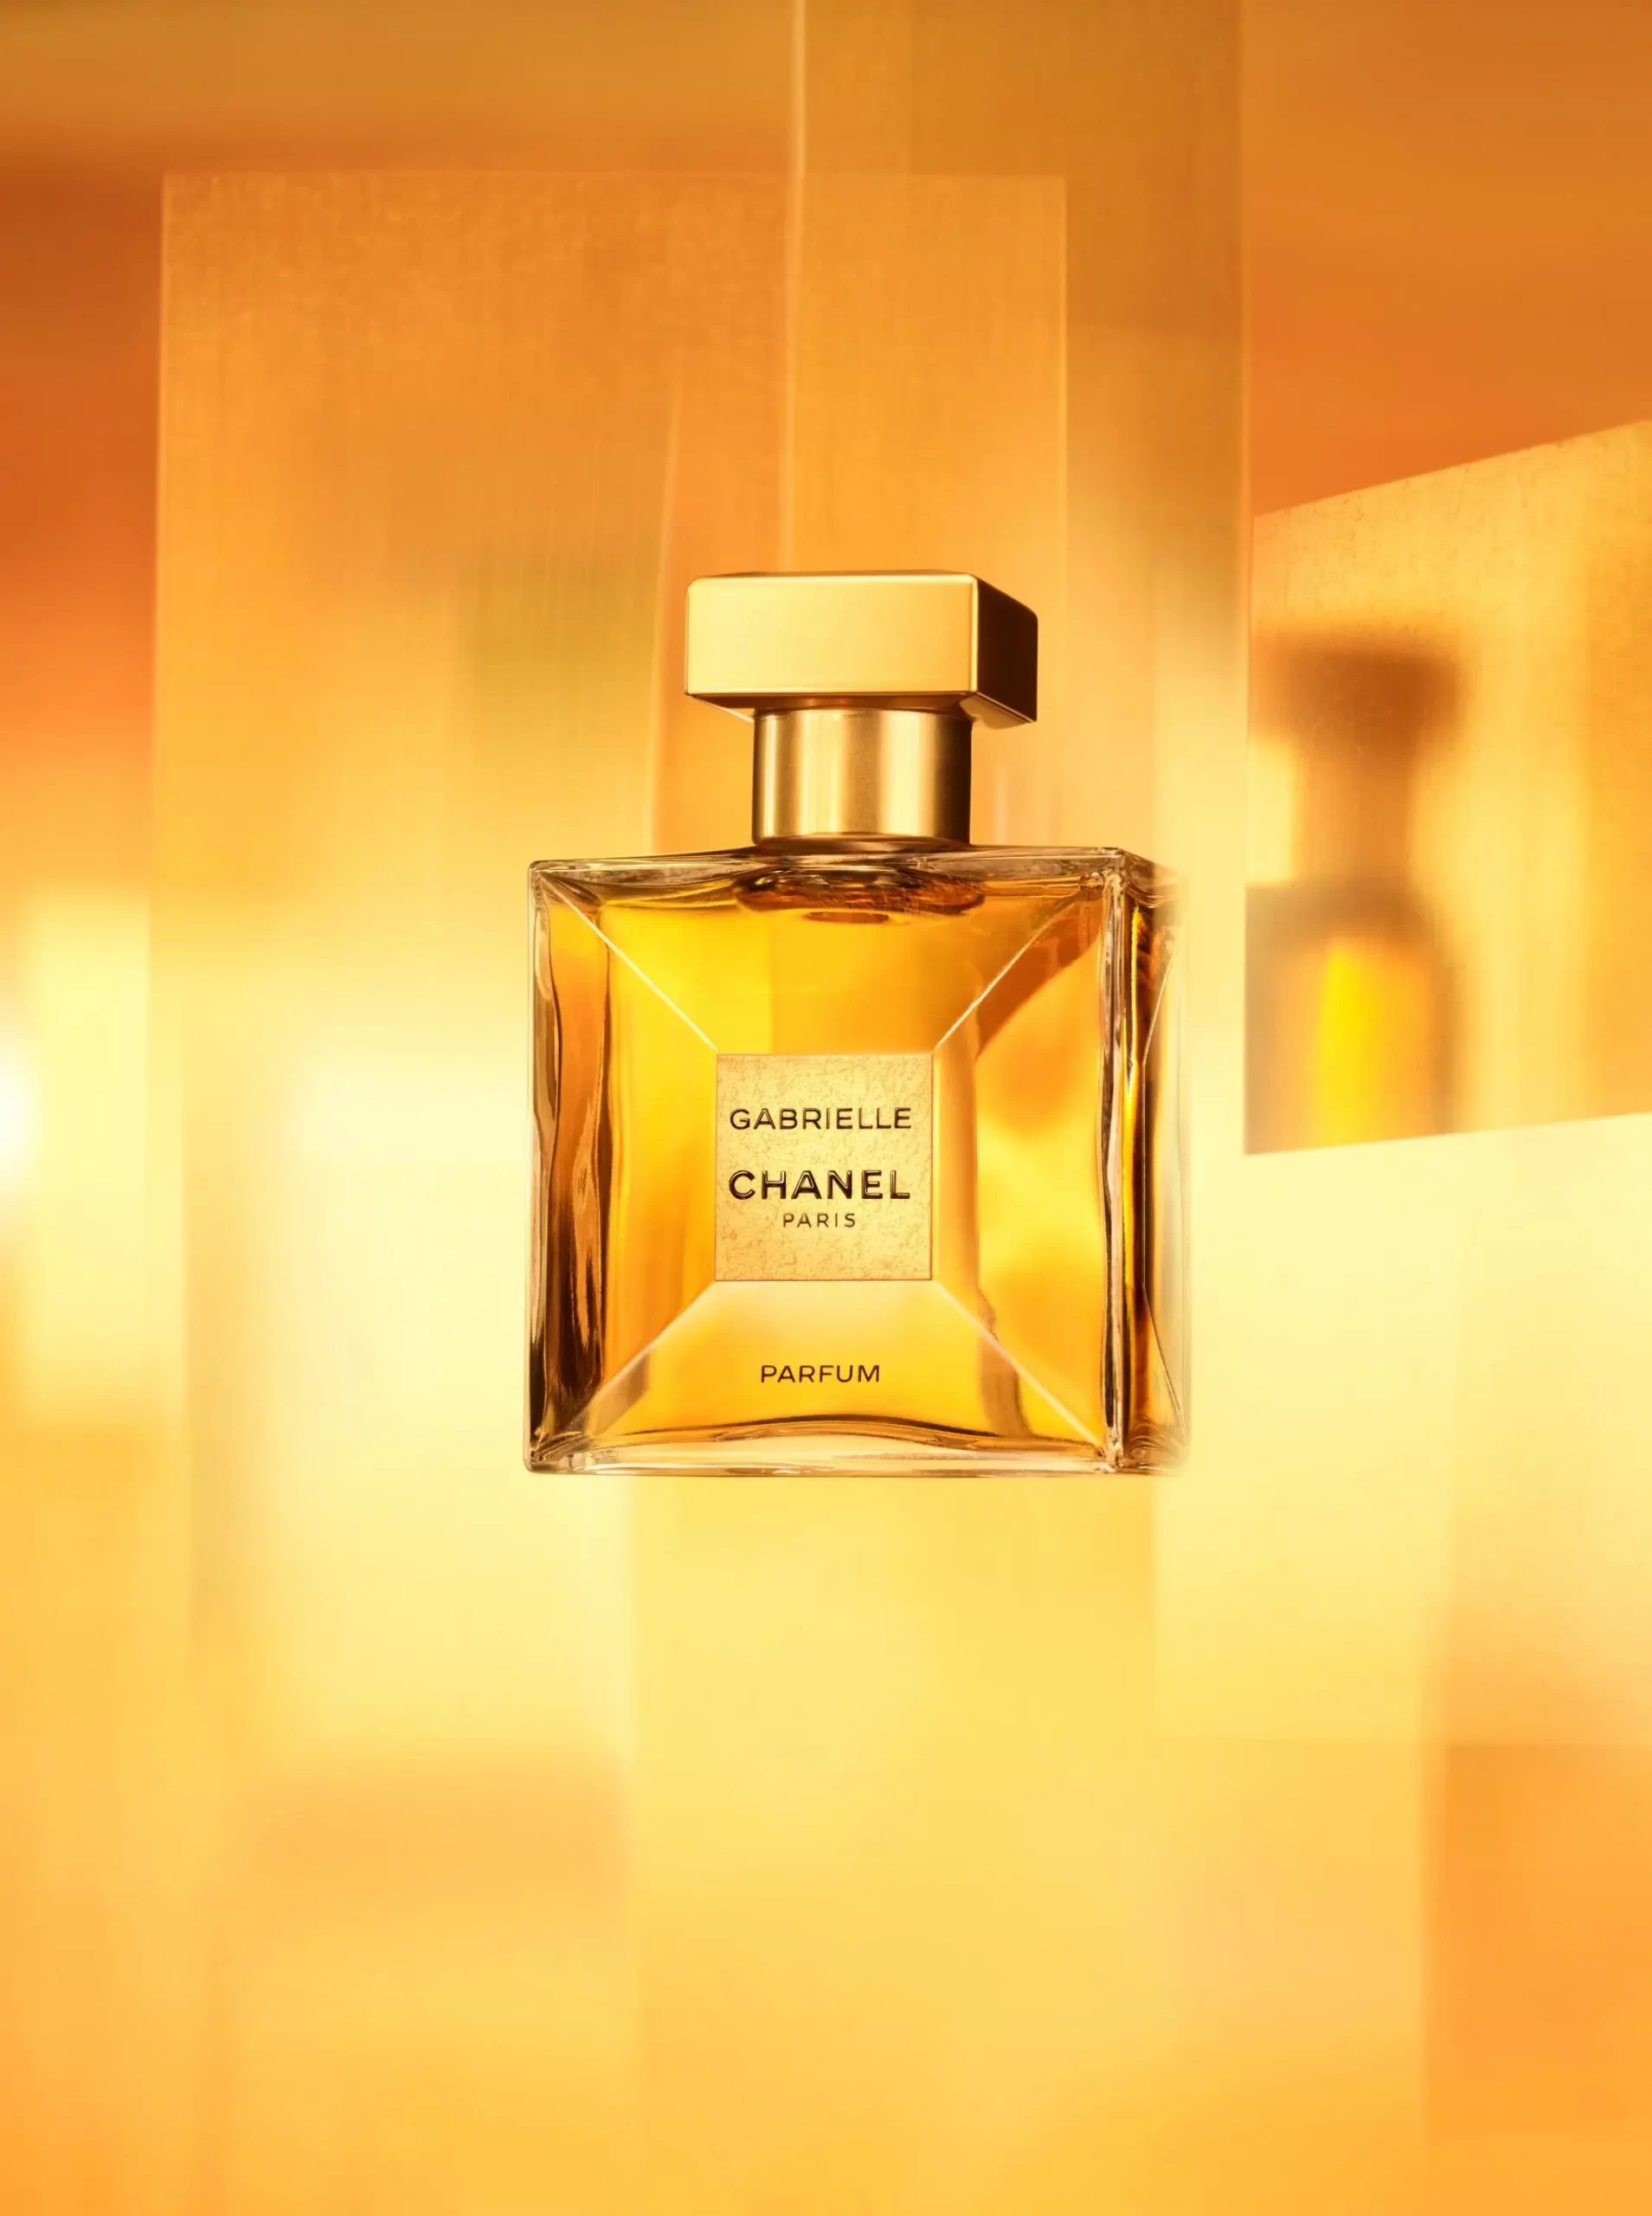 Chanel presenta un monumental frasco del mítico perfume Chanel Nº5  People  en Español